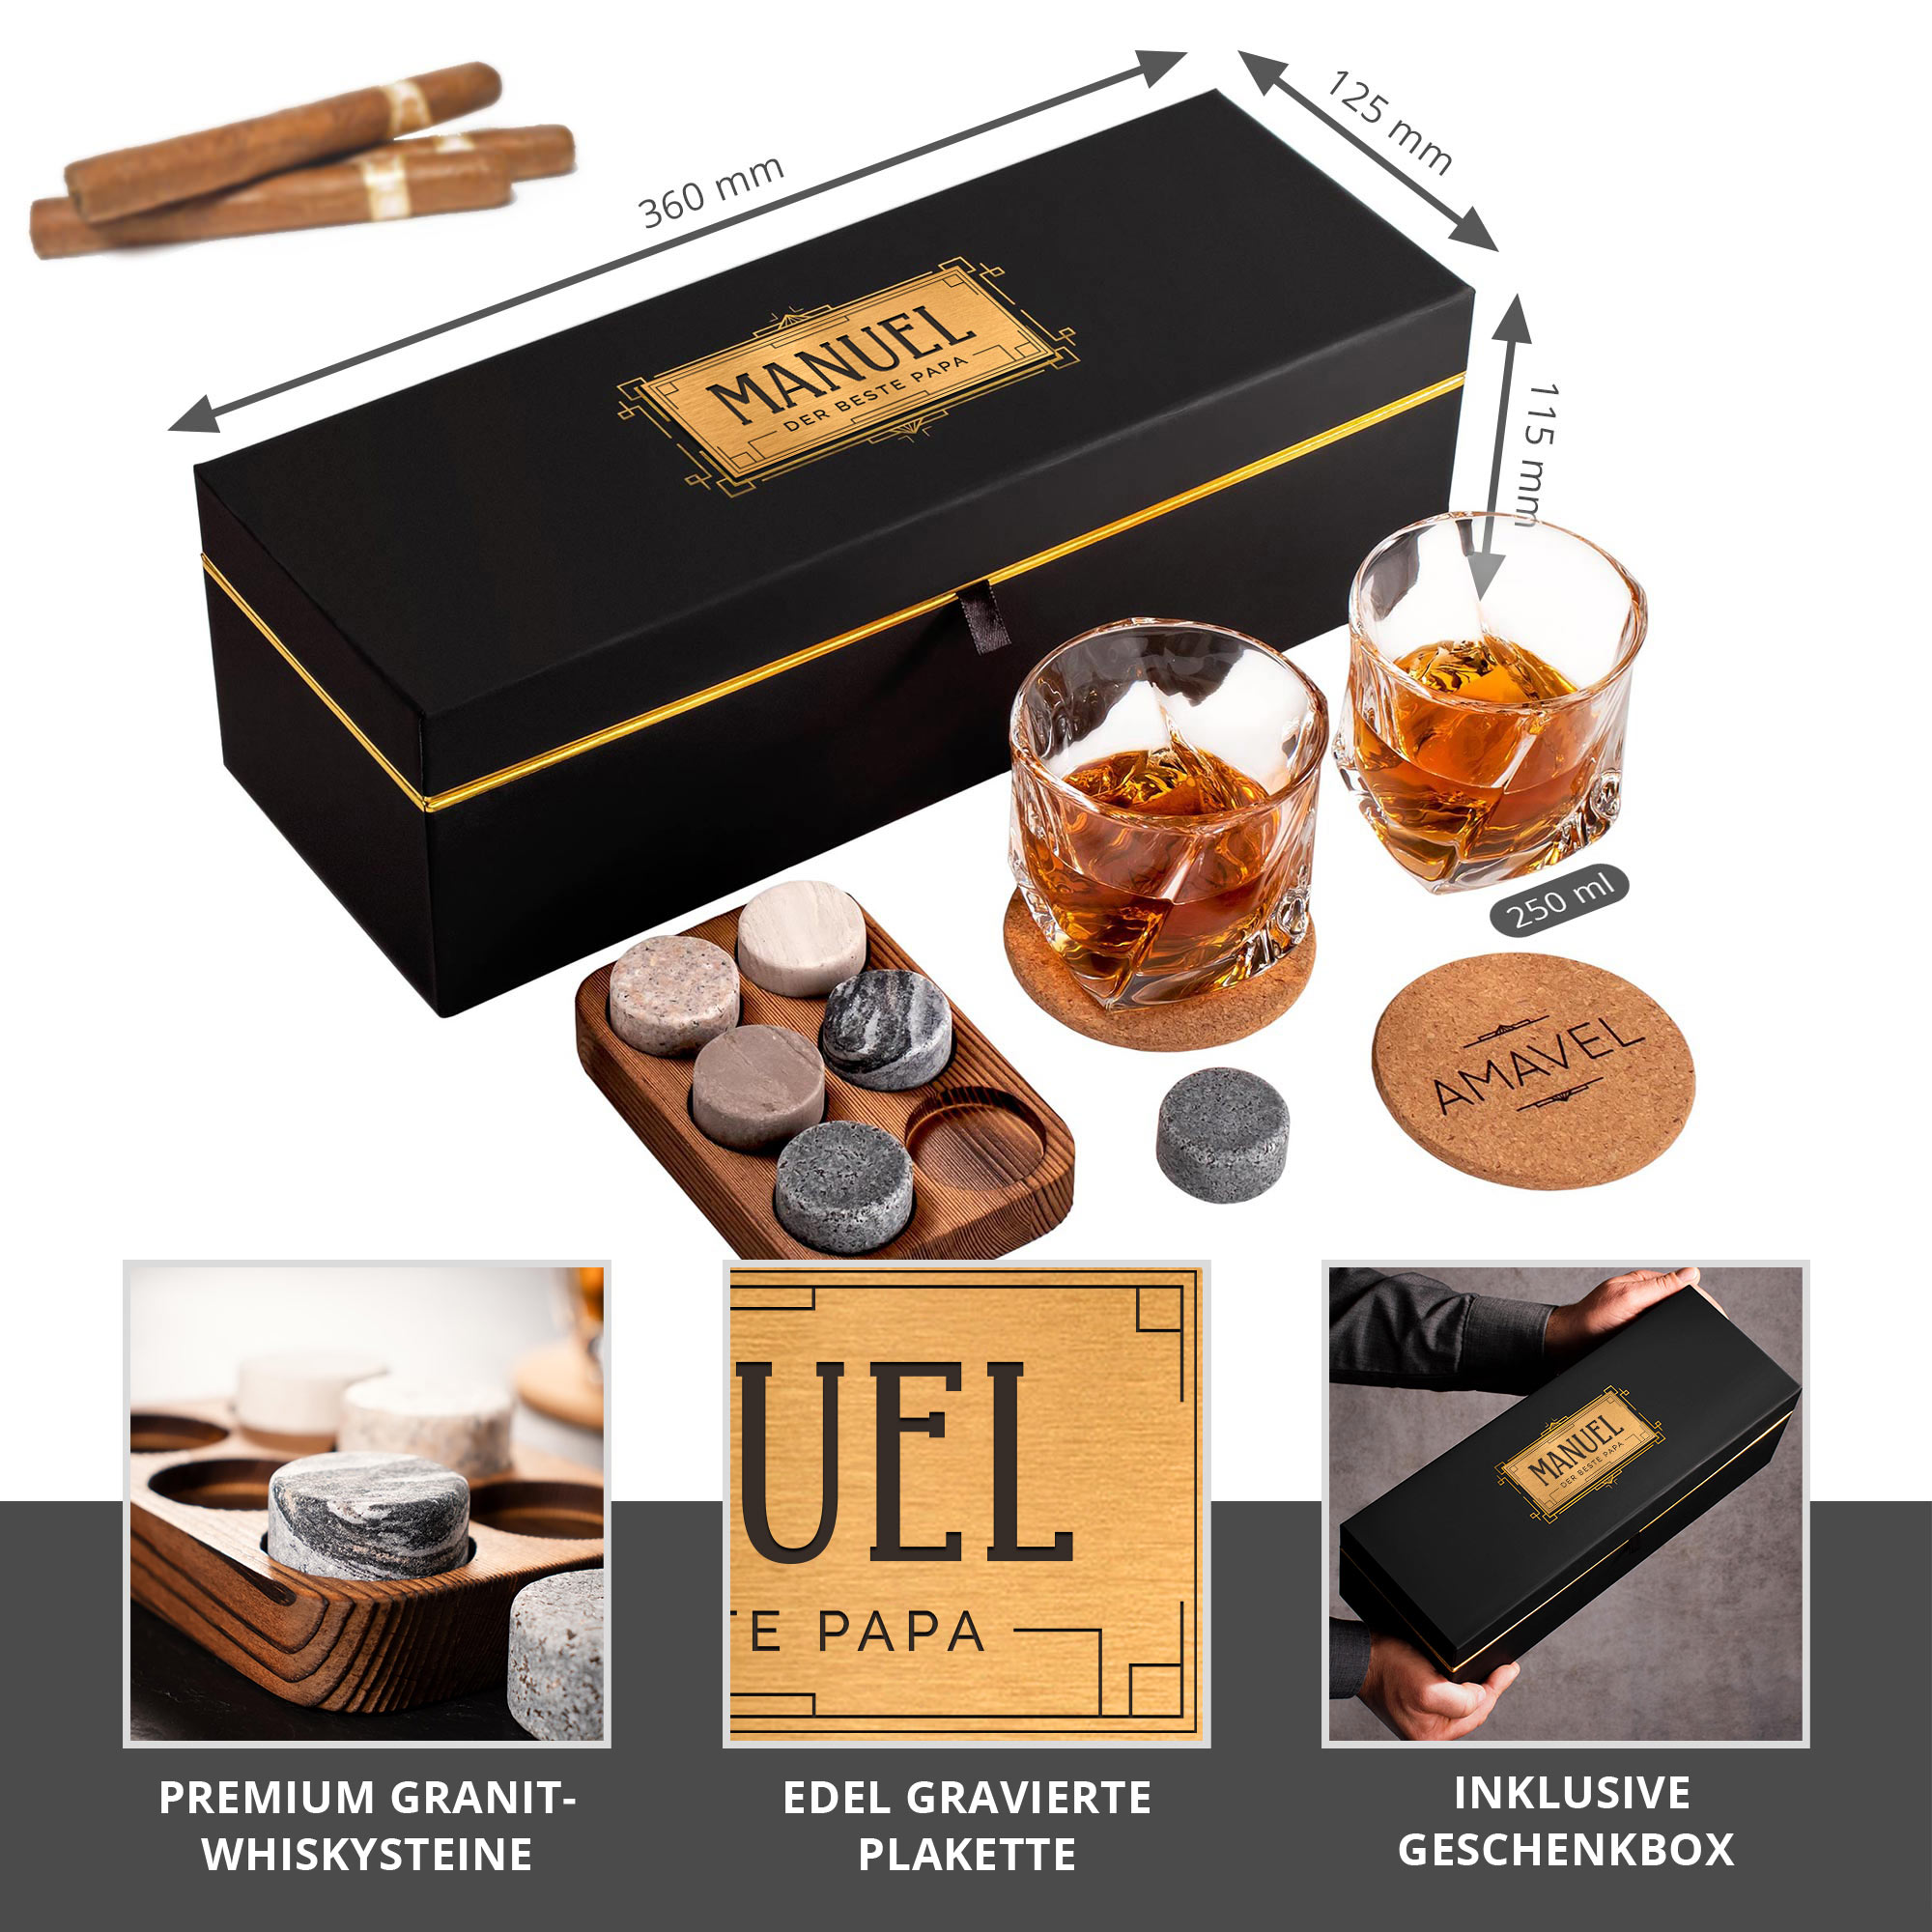 Whisky Set in personalisierter Geschenkbox - Bester Papa 0021-0002-DE-0001 - 1